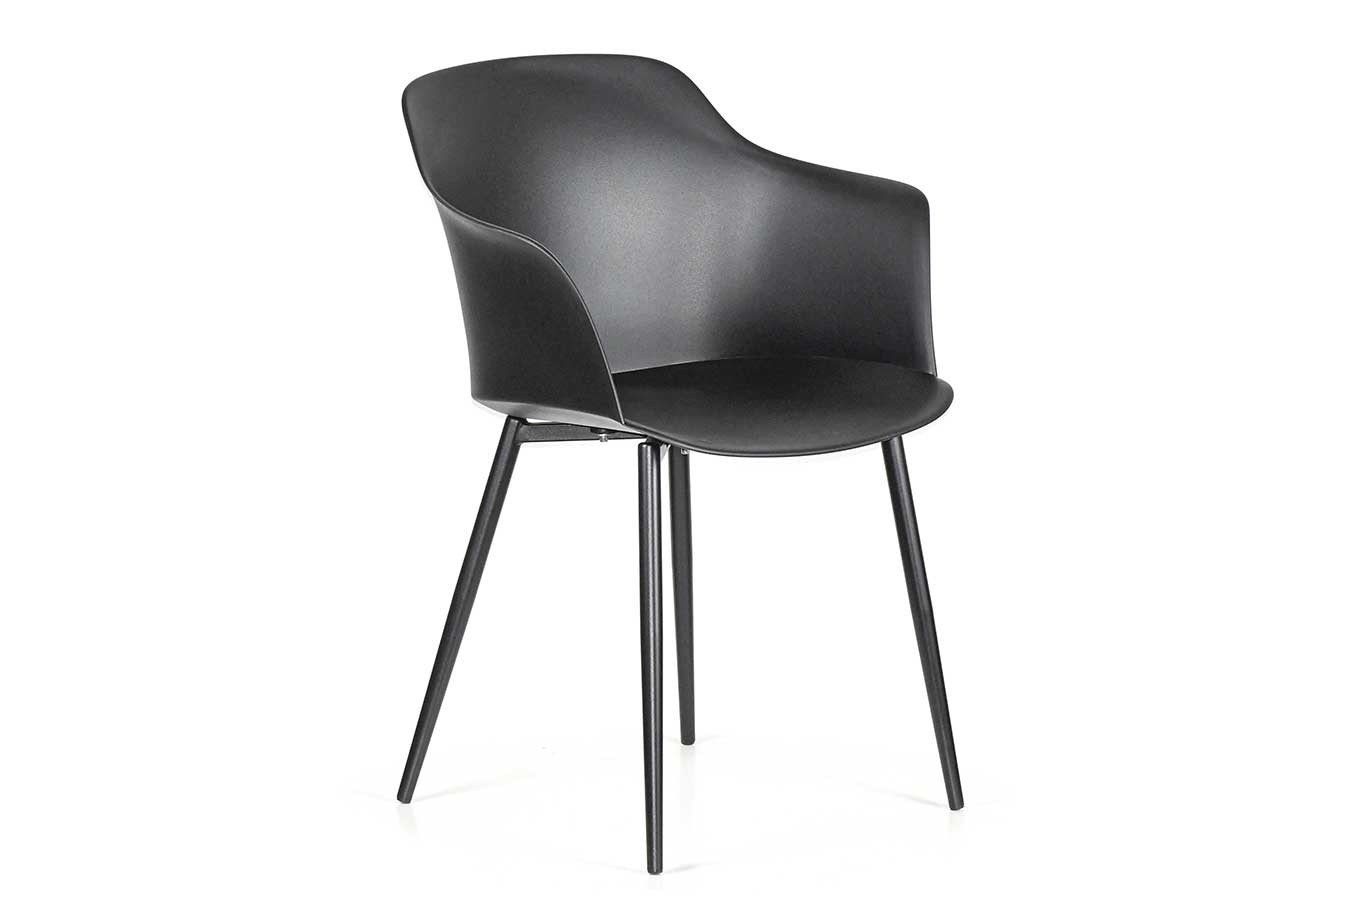 daslagerhaus living Stuhl italienischer Designchair Blanchet mit Armlehne du schwarz pulver